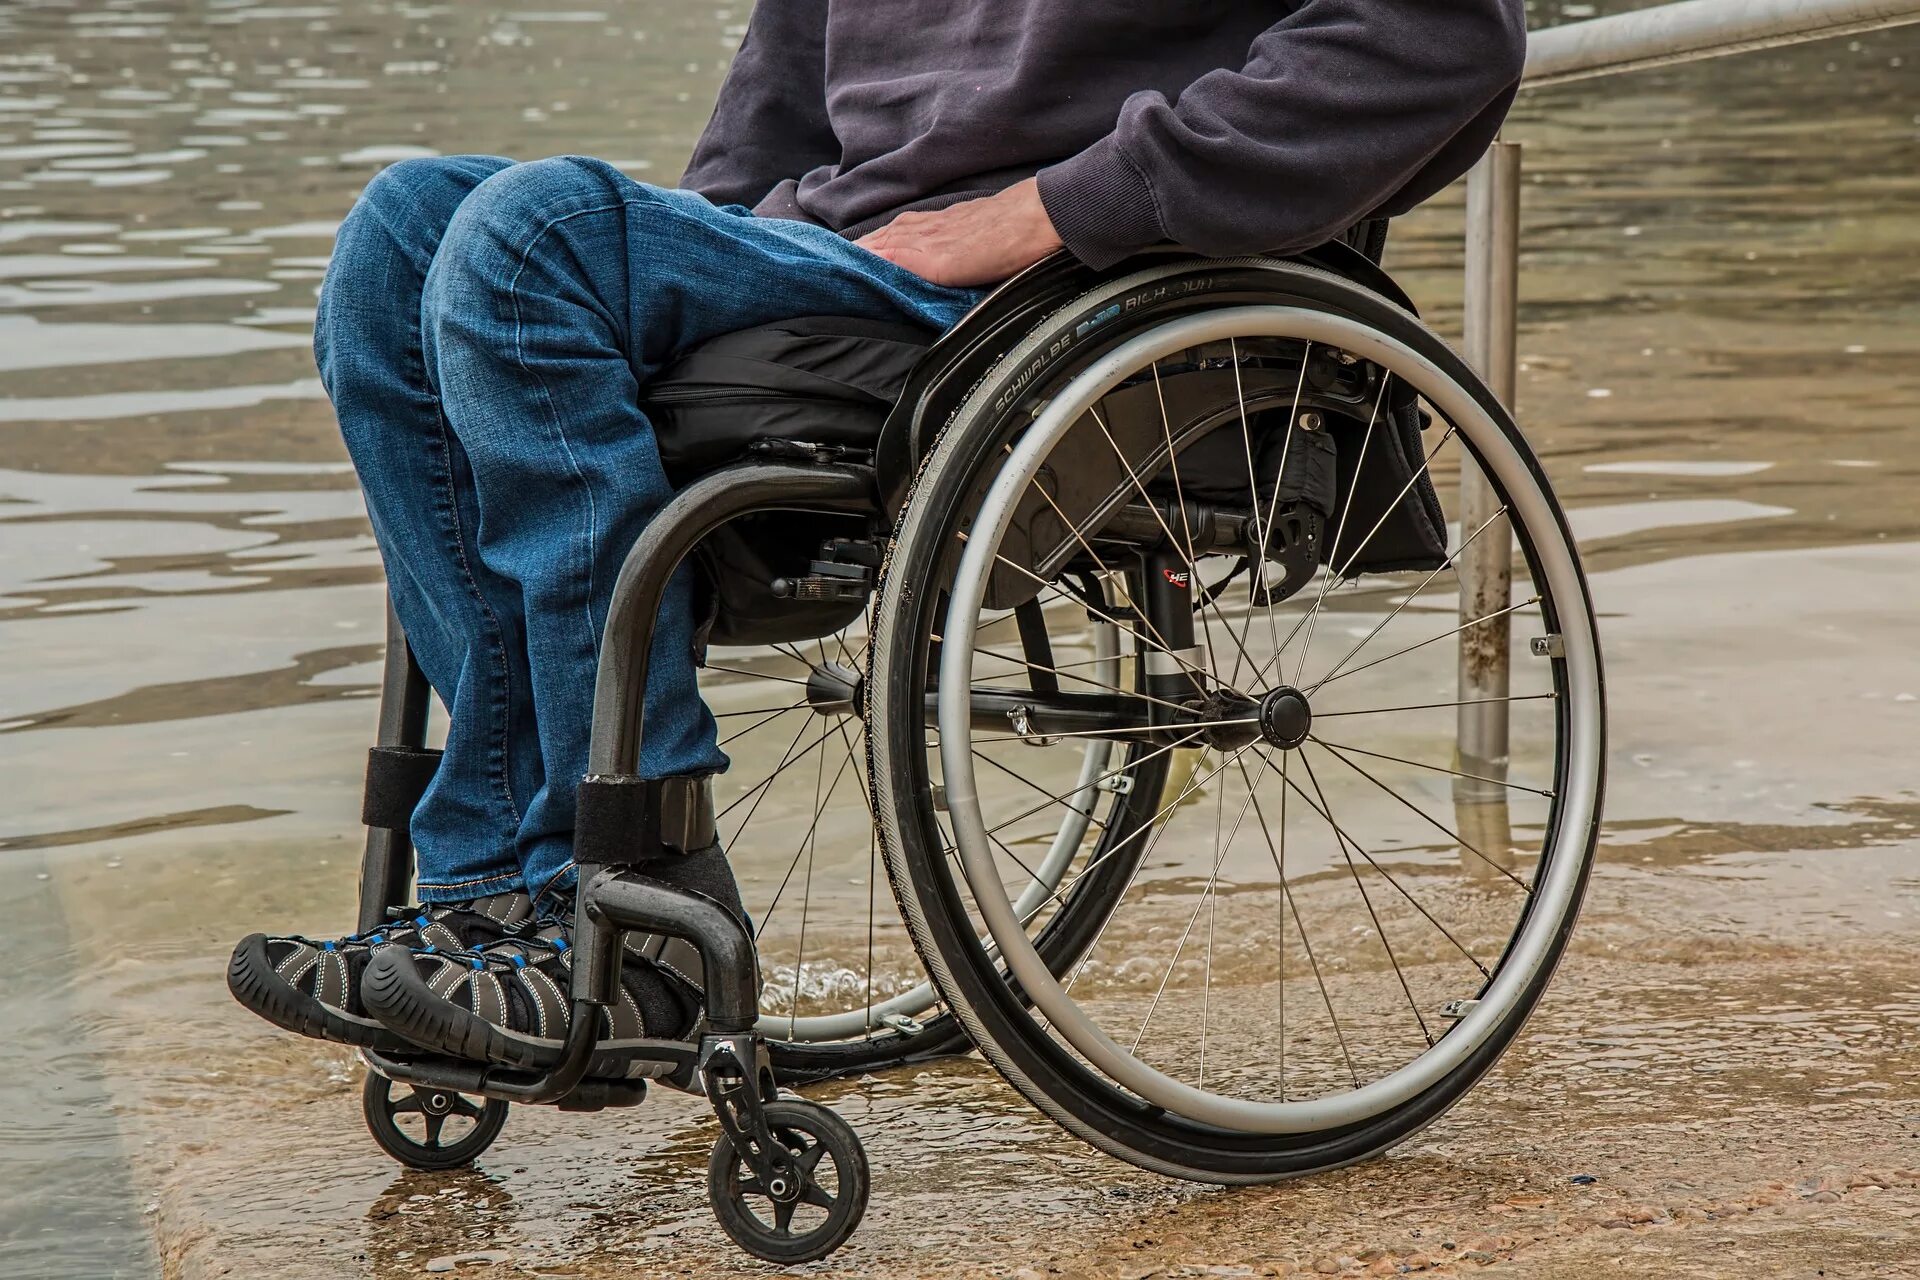 Инвалидность помогу. Человек в инвалидной каляс. Коляска для инвалидов. Инвалид колясочник. Челик в инвальдной коляске.